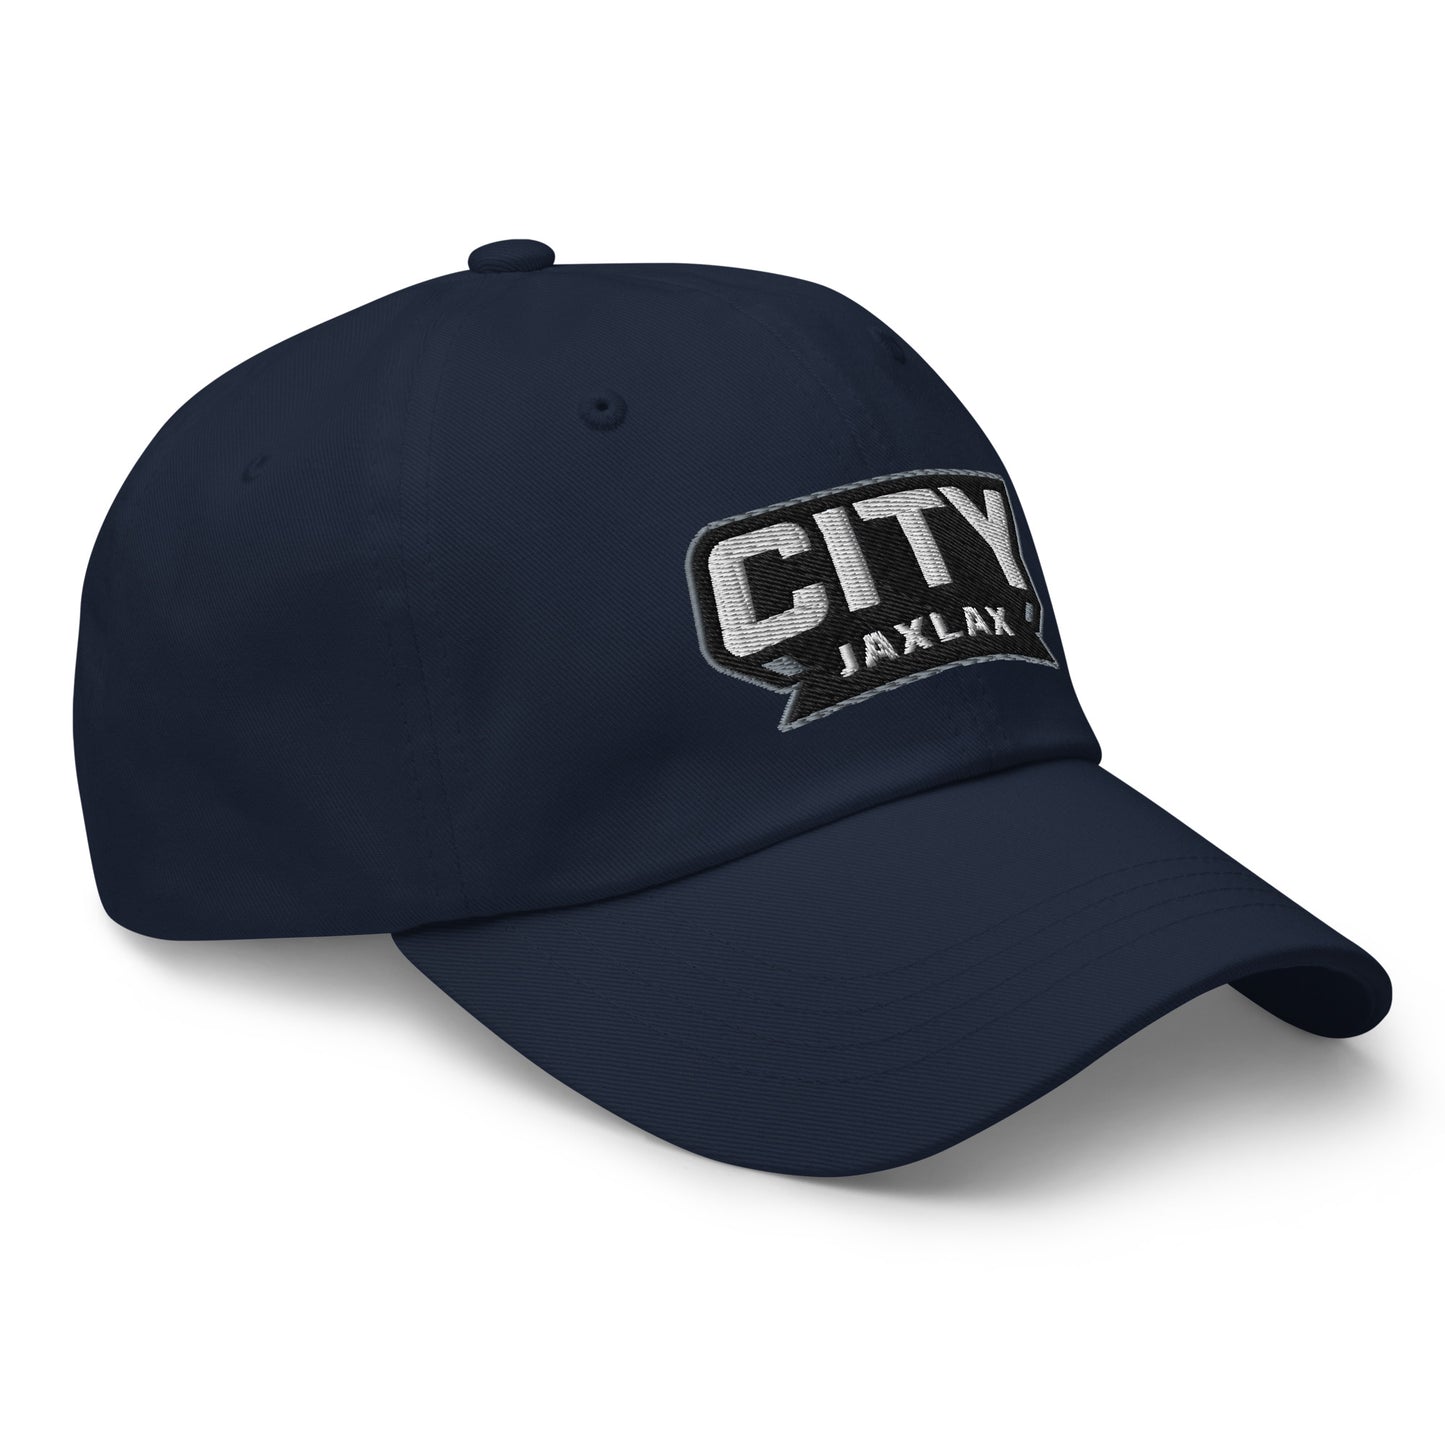 Jax Lax City - Dad hat